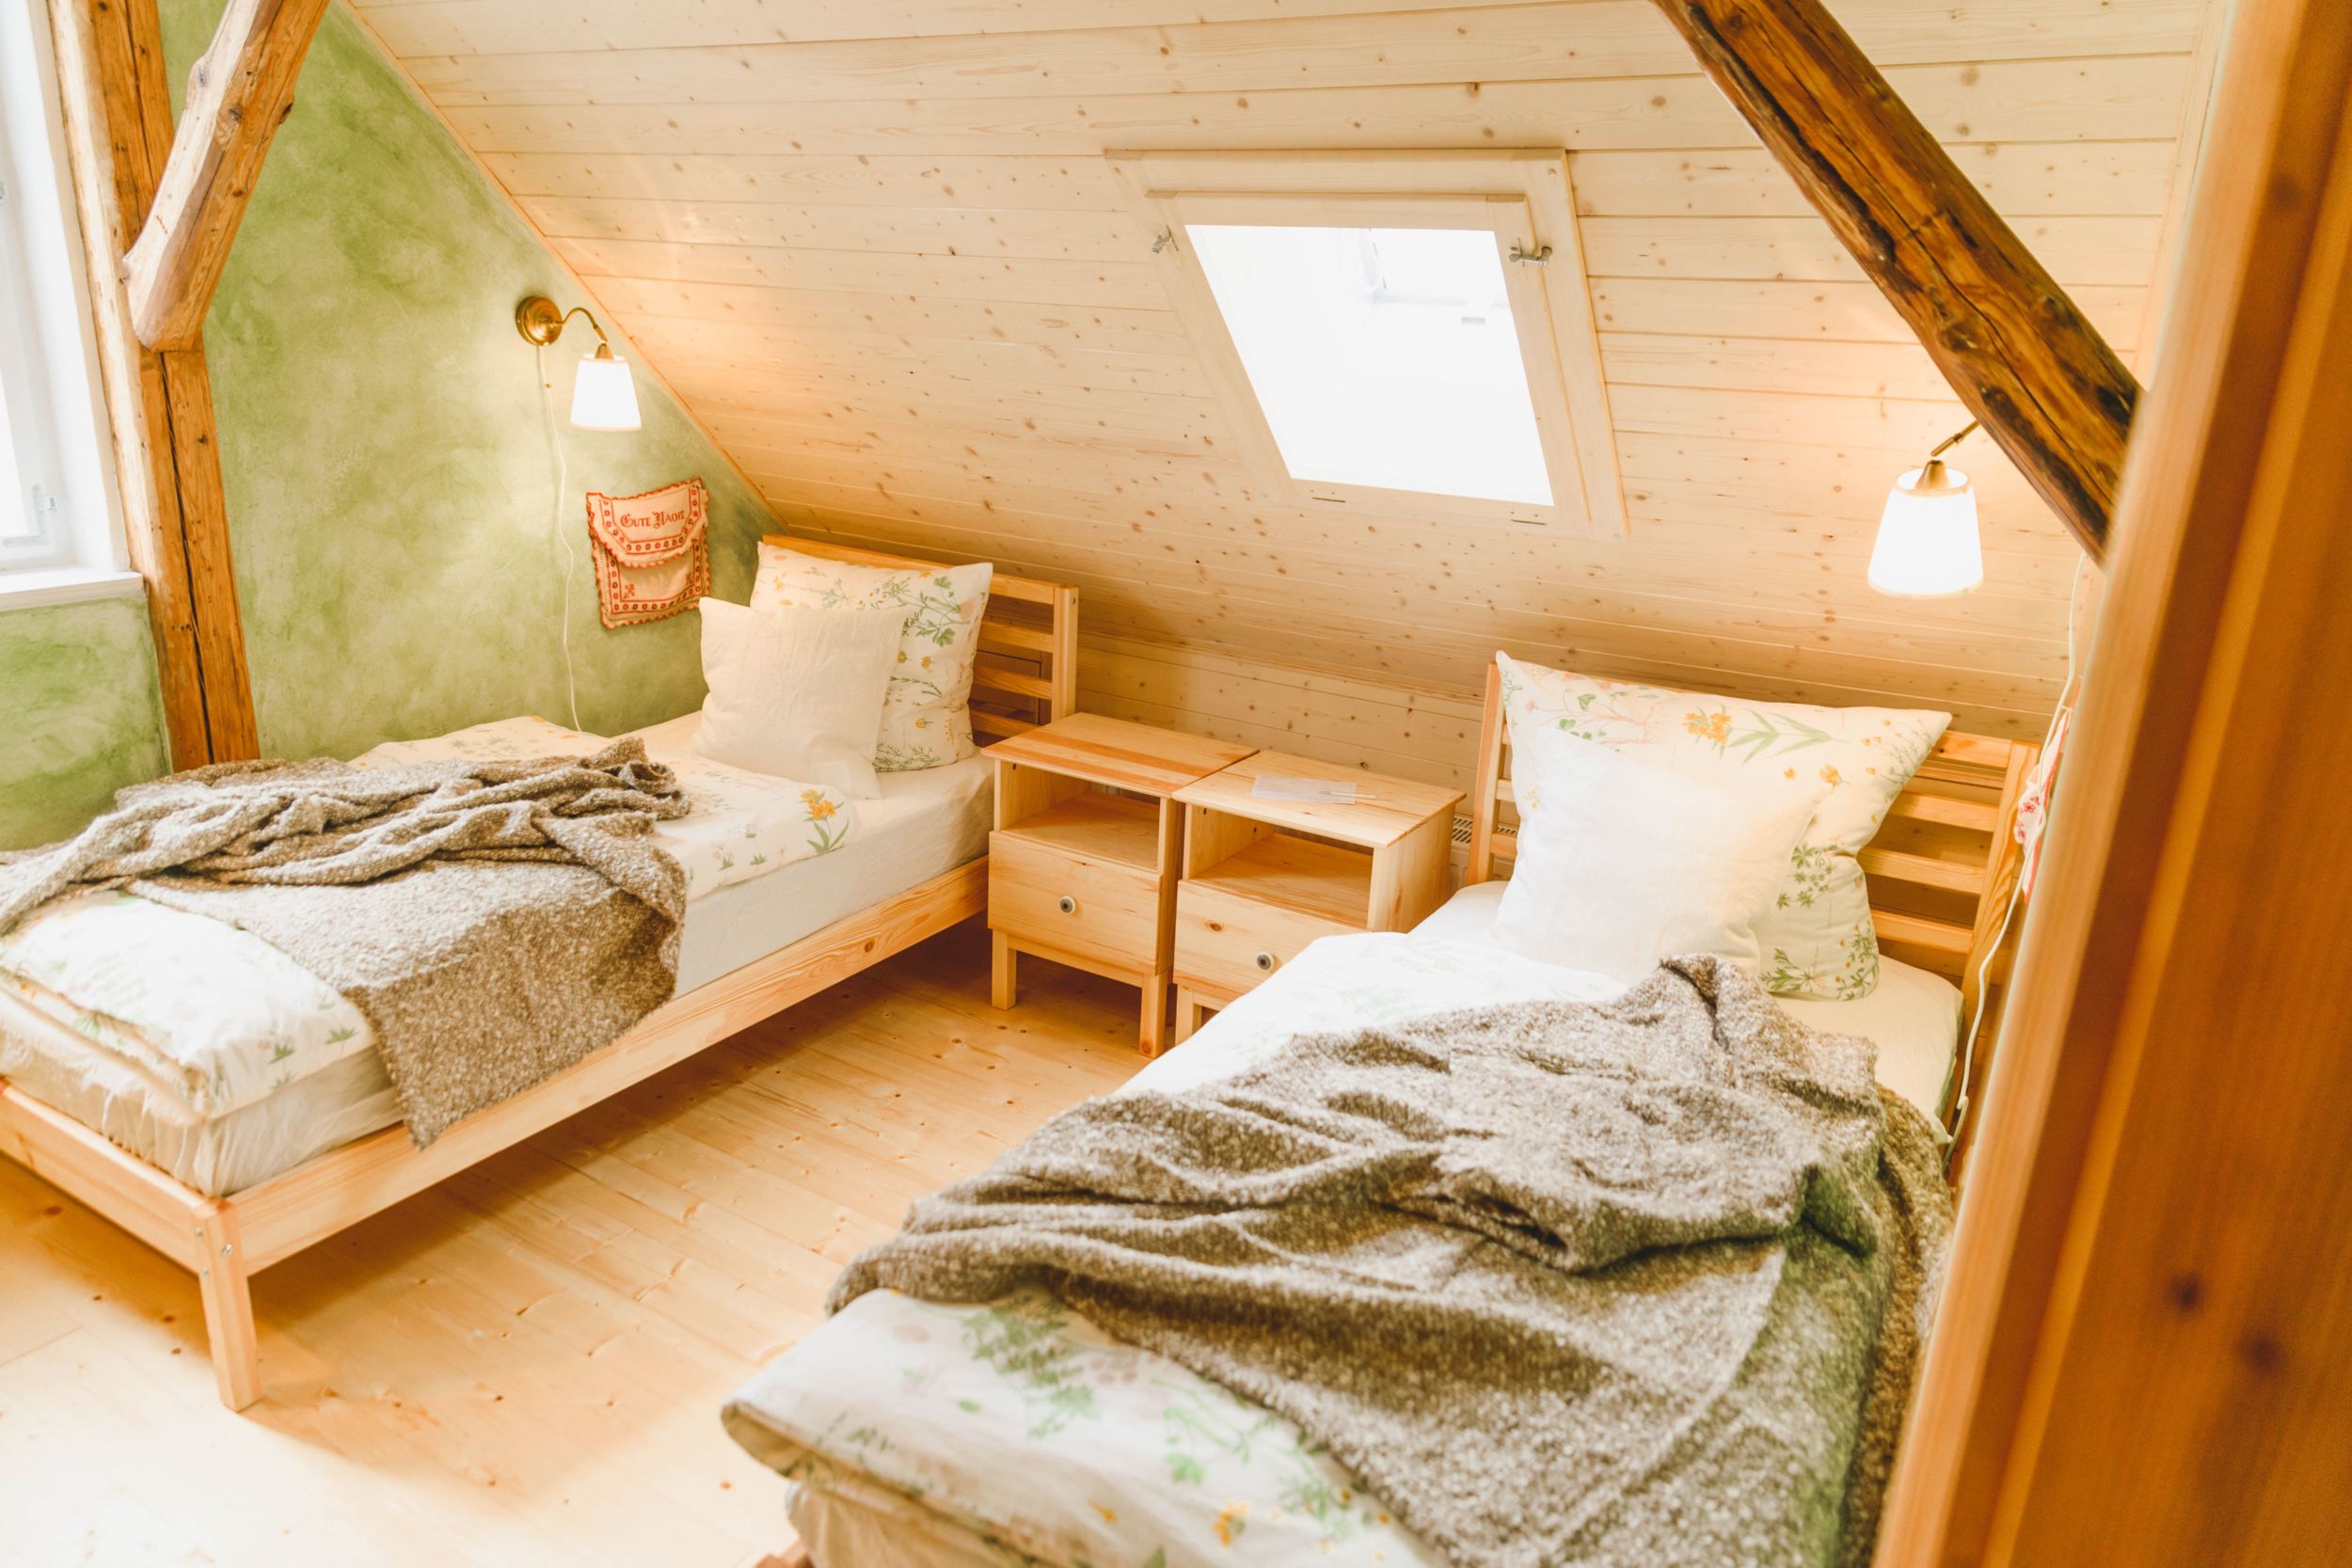 Grün gestrichenes Schlafzimmer mit zwei Einzelbetten, Dachschrägen und Holzbalken. Lampe über jedem Bett.